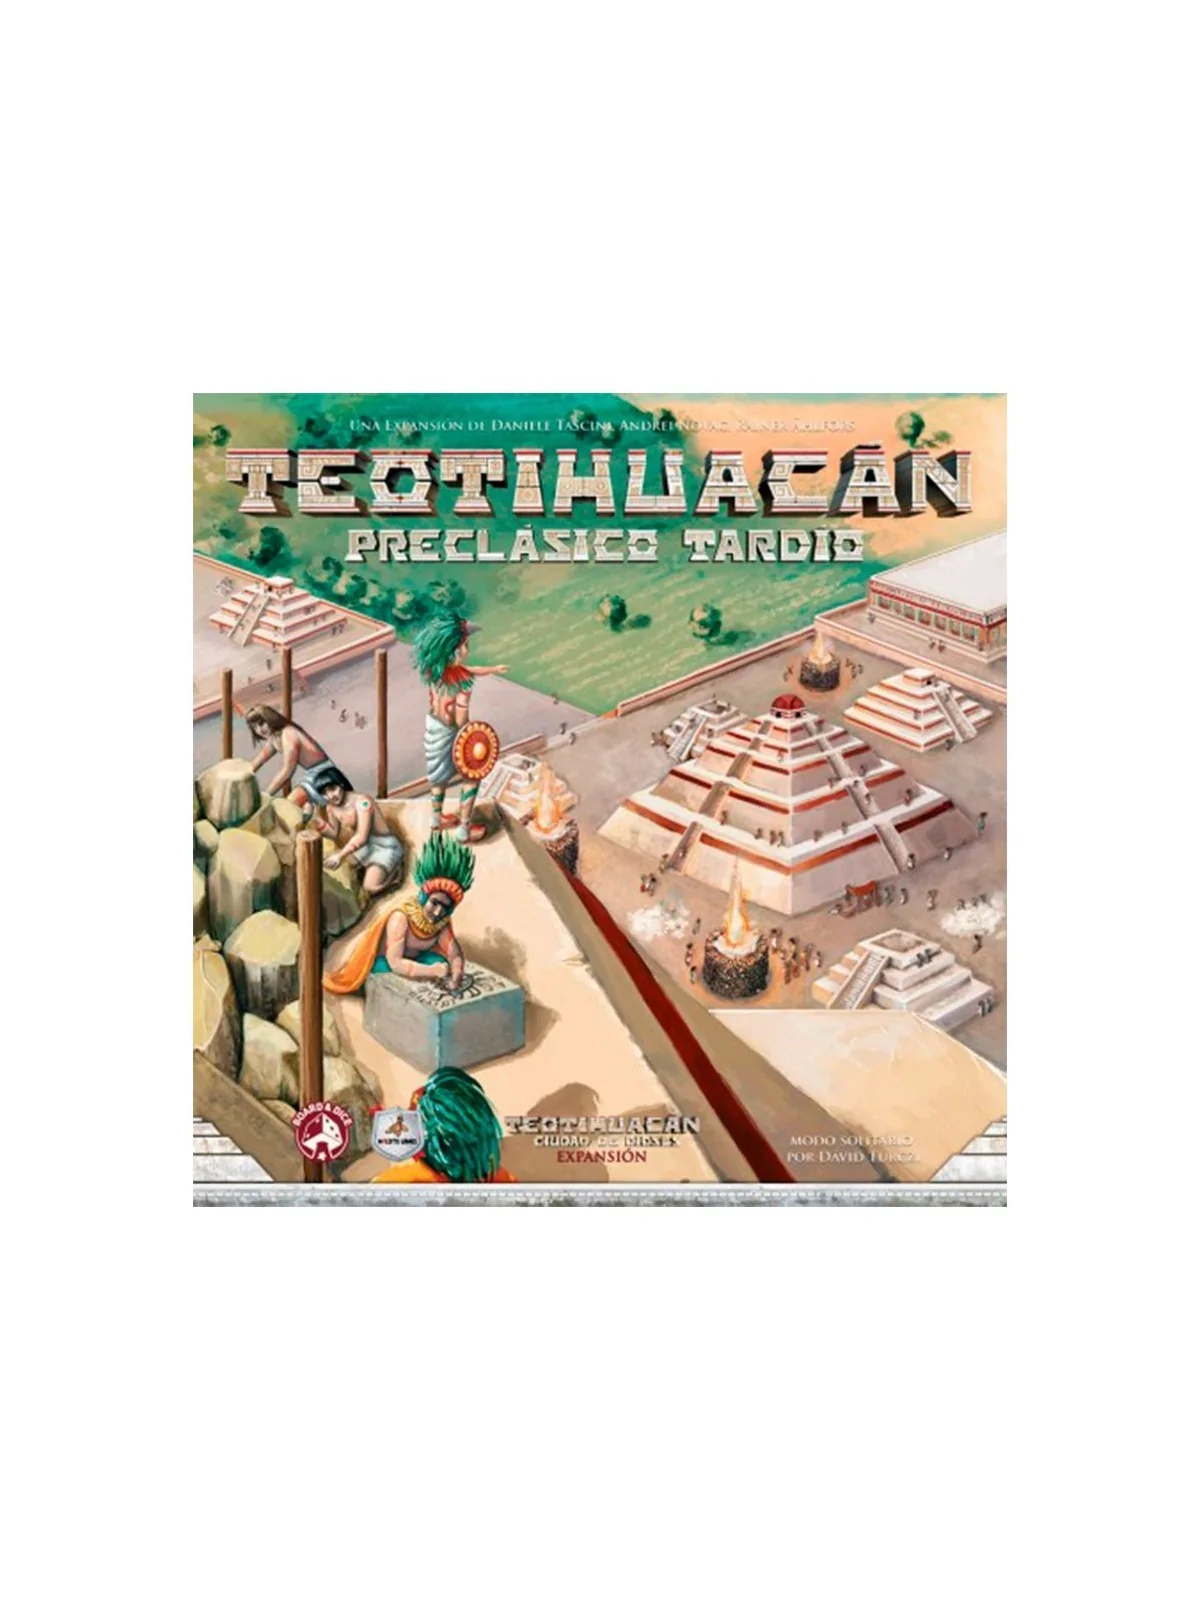 Comprar Teotihuacán: Preclásico Tardío barato al mejor precio 22,50 € 